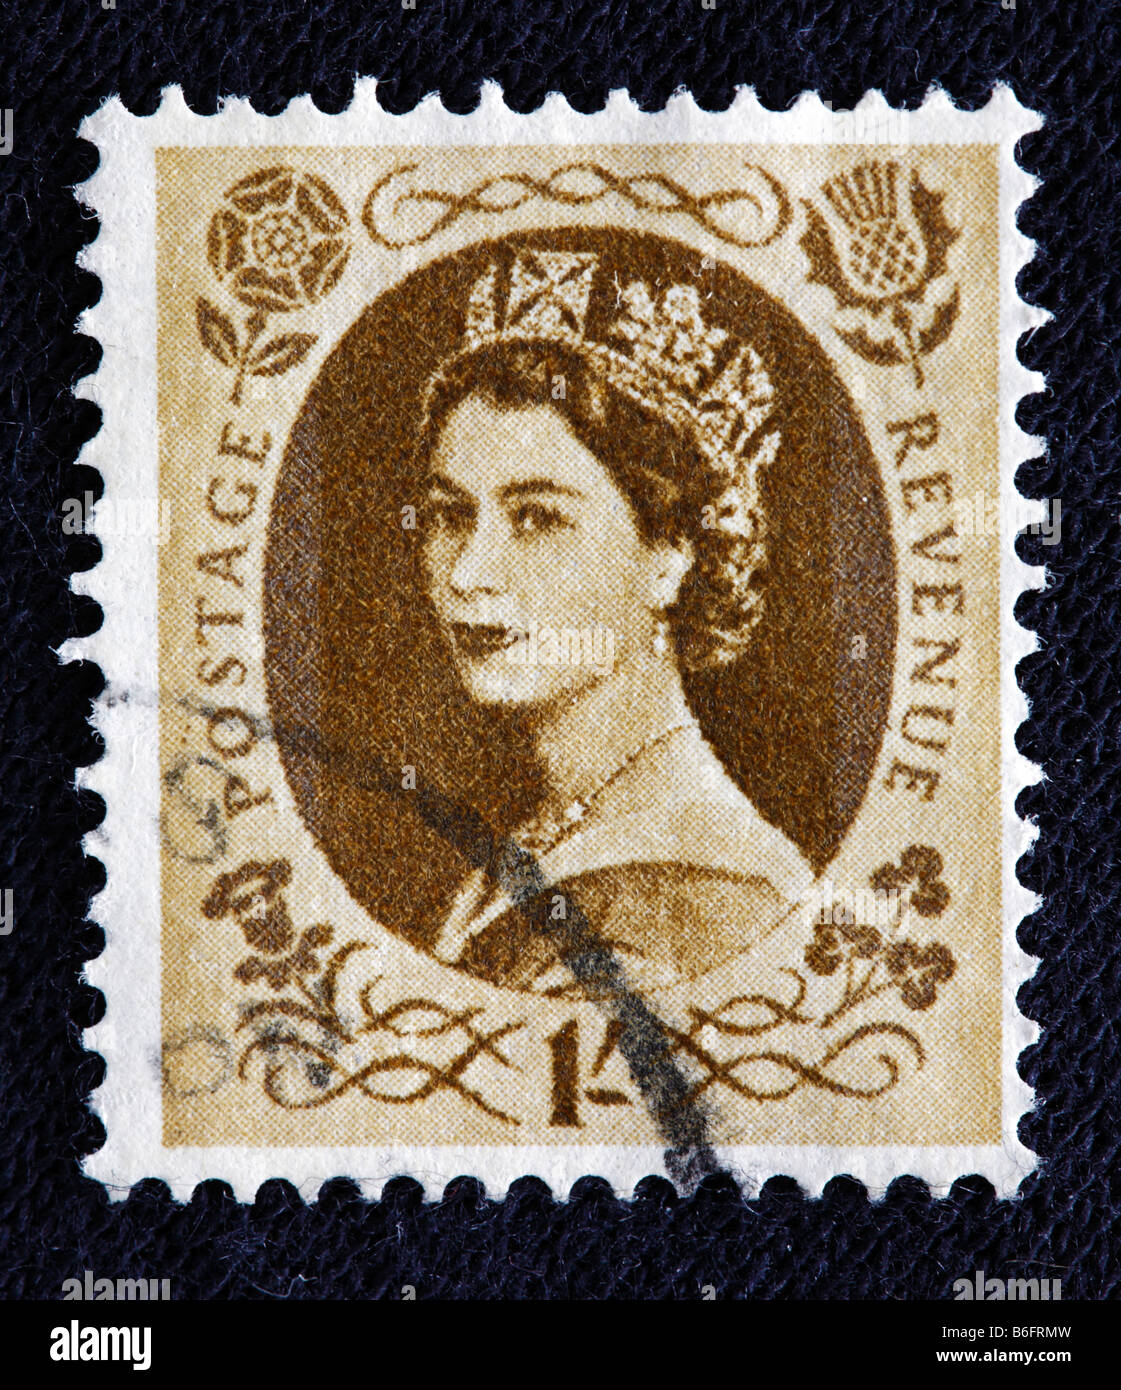 La reine Elizabeth II du Royaume-Uni (1952 à aujourd'hui), timbre-poste, UK Banque D'Images